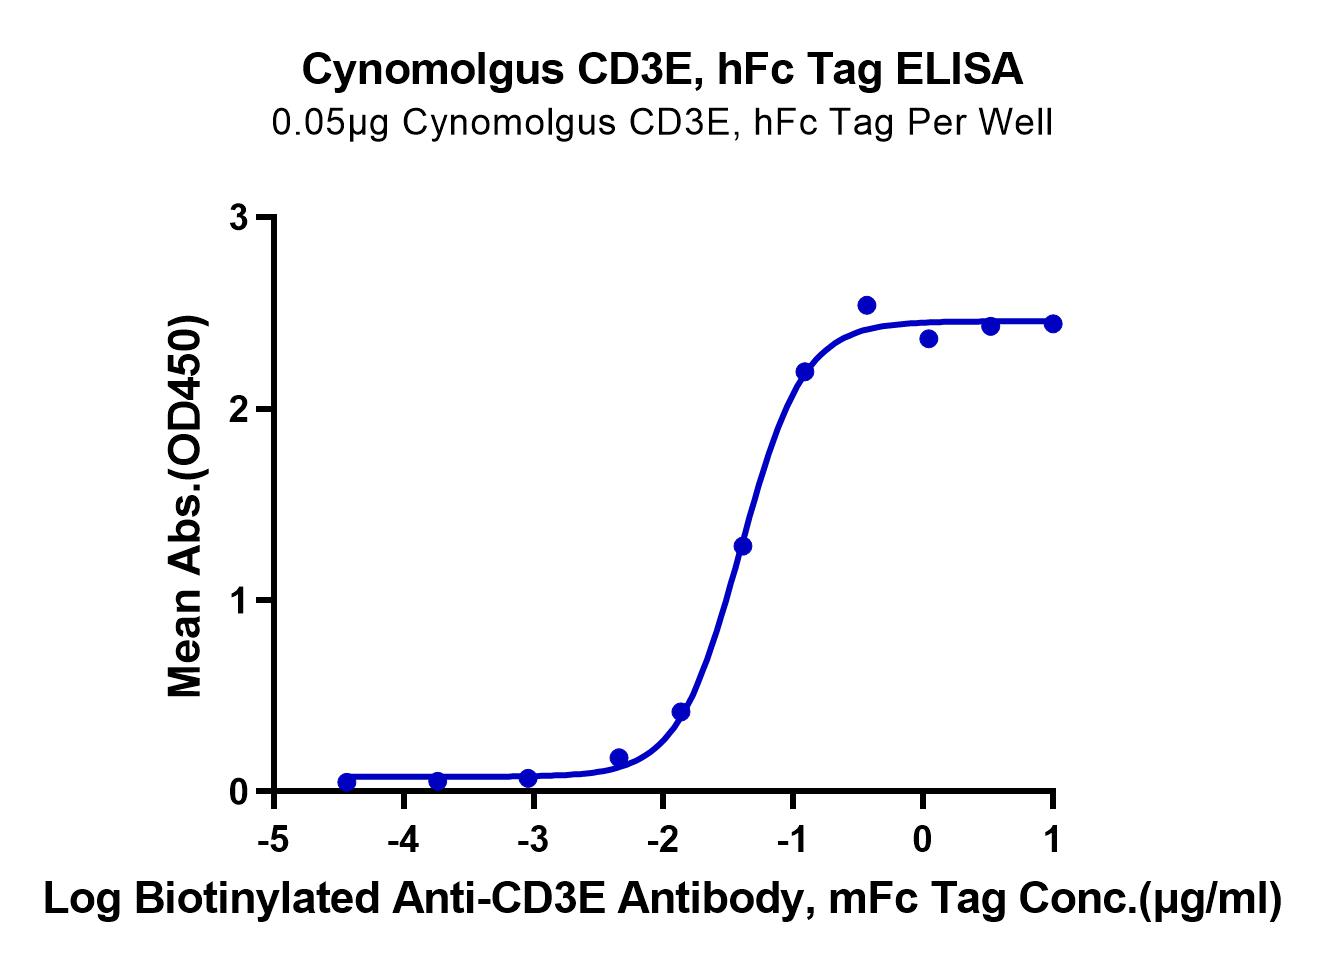 Cynomolgus CD3E/CD3 epsilon Protein (LTP10951)